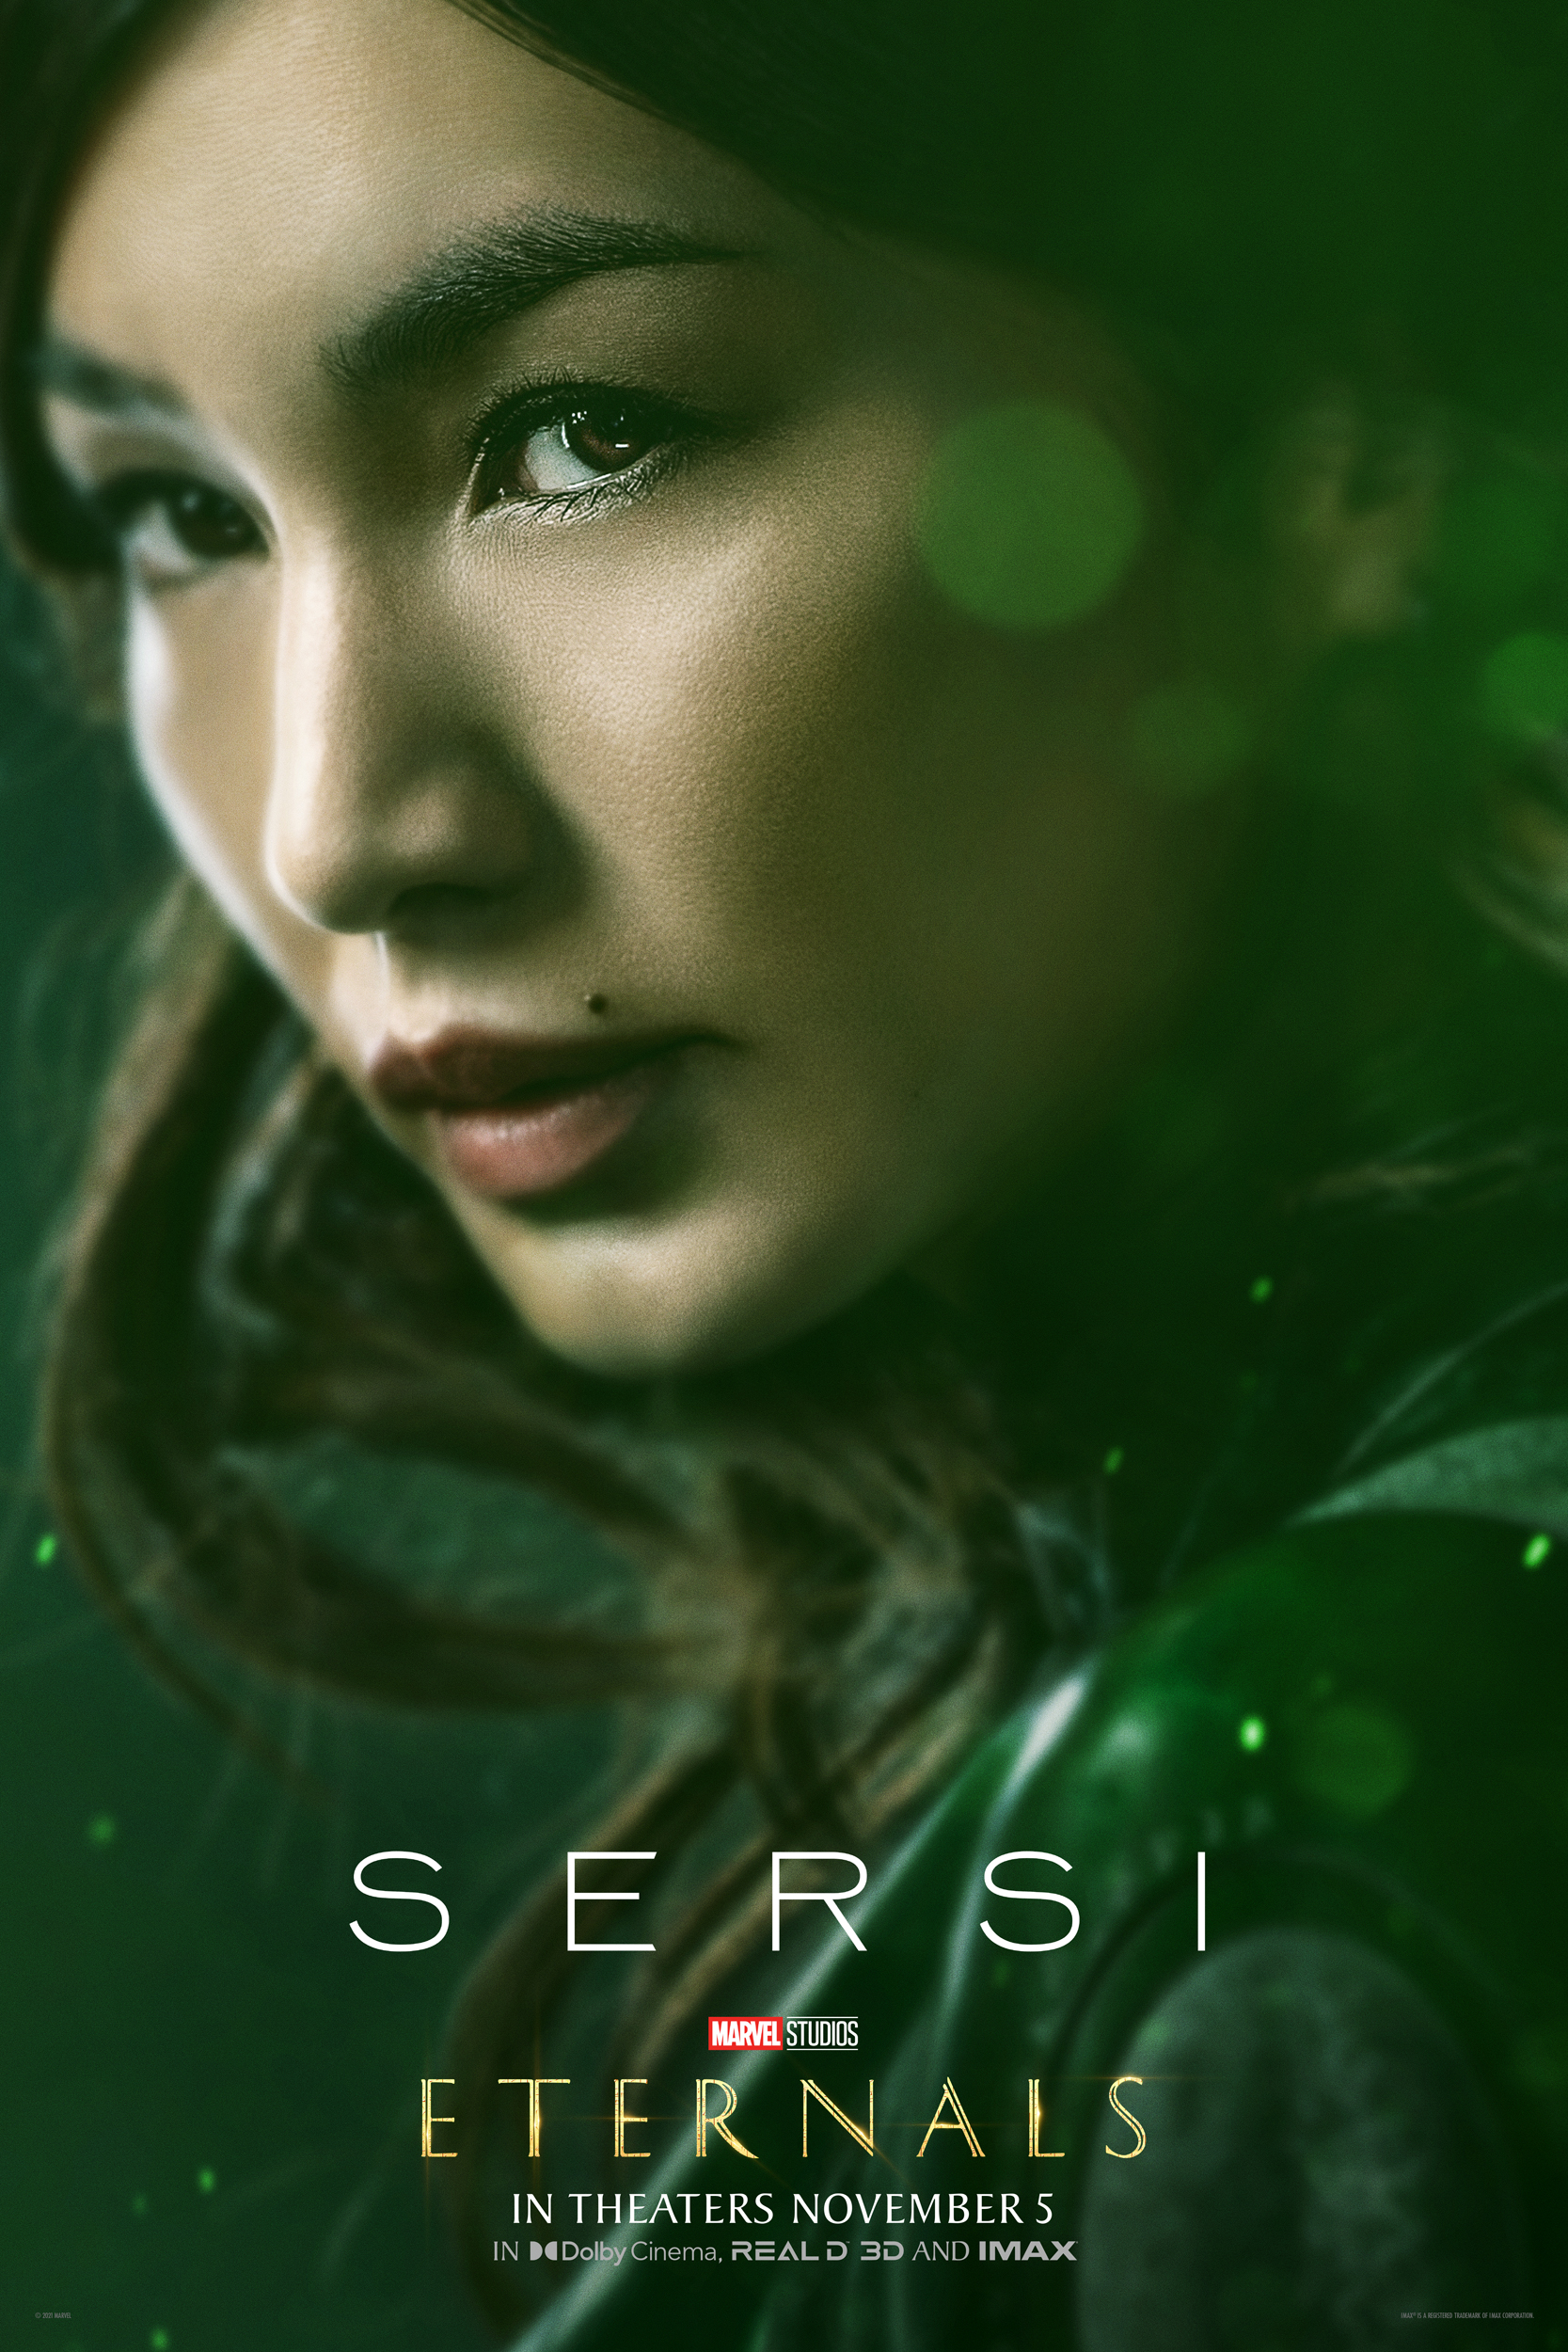 Gemma Chan as humankind-loving Sersi